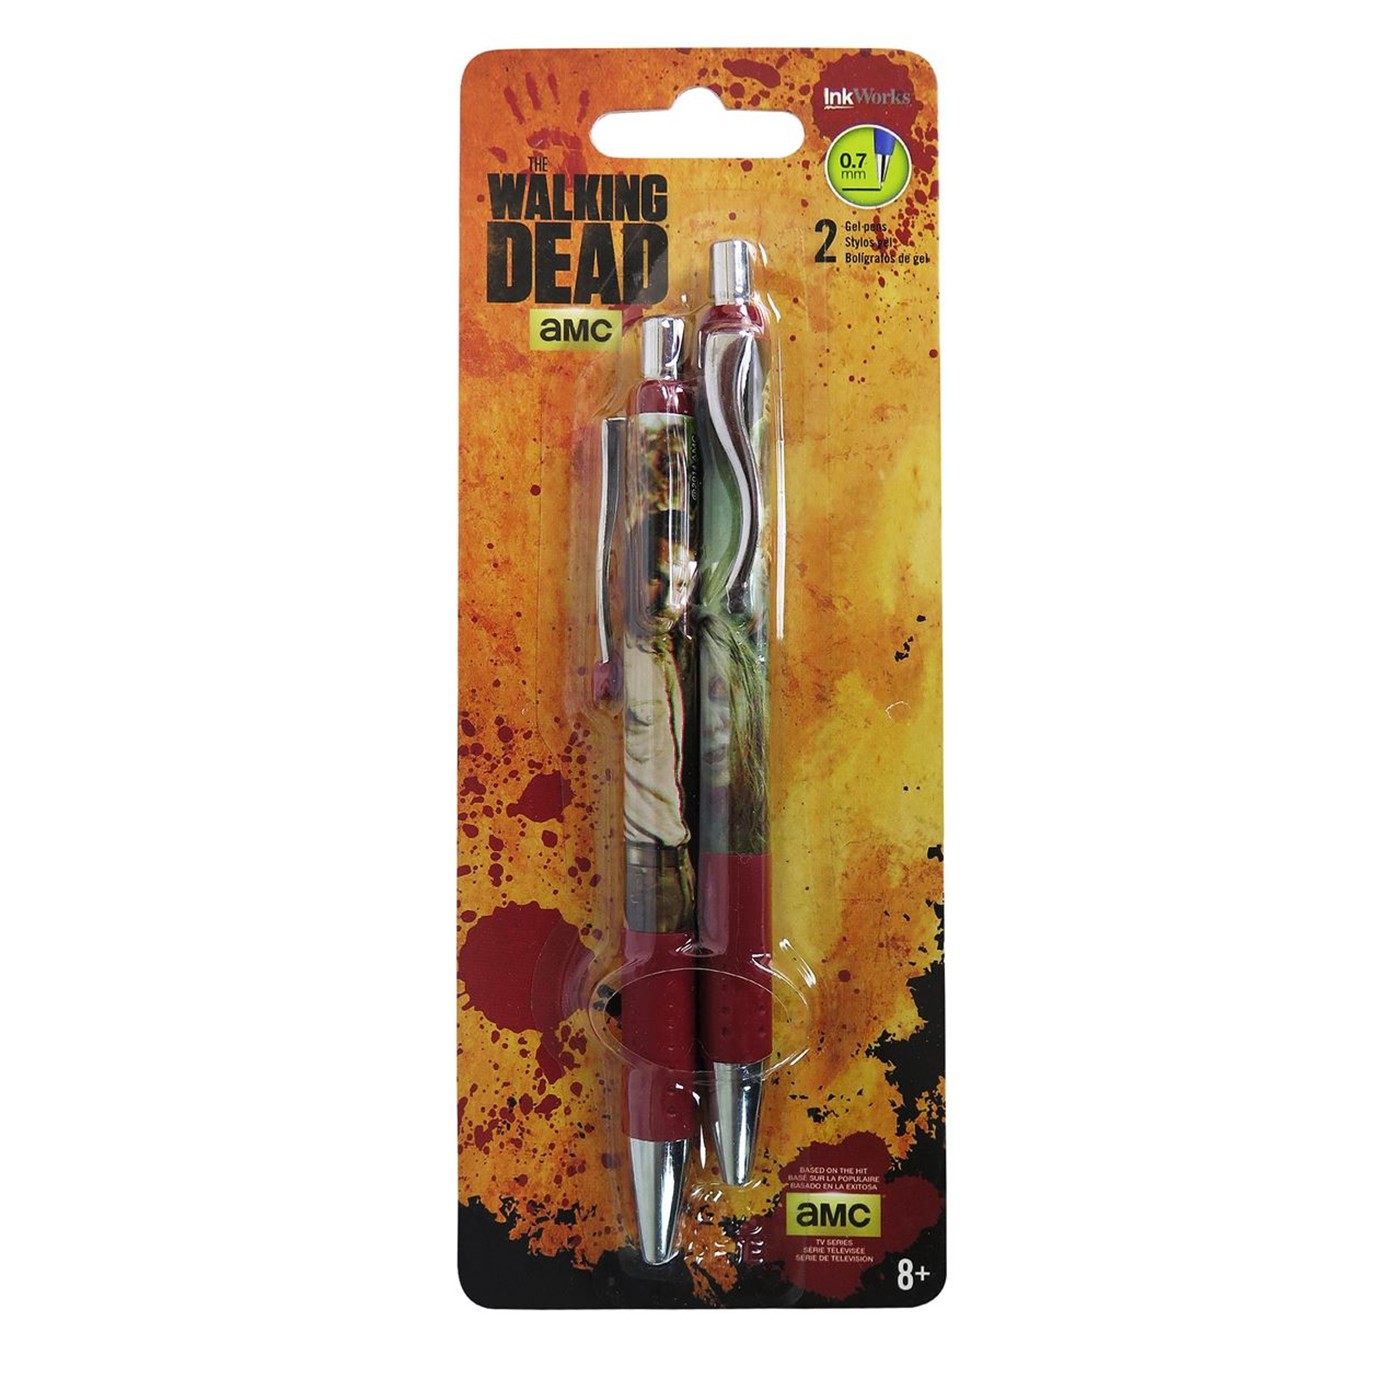 Walking Dead Gel Pen 2-Pack